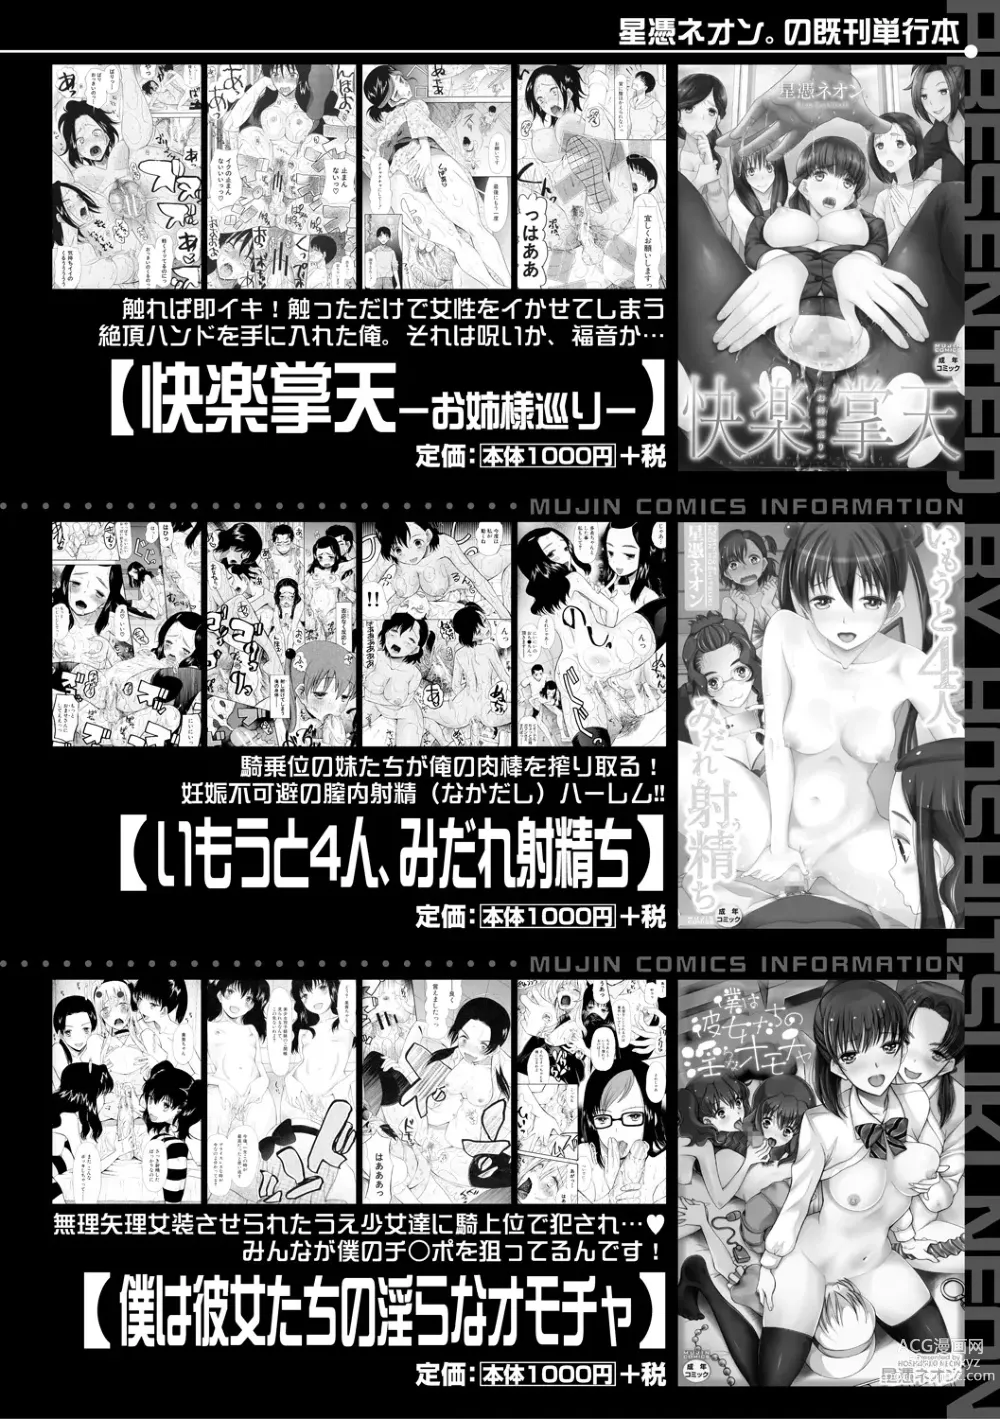 Page 216 of manga Soku Nuki Soku Hame Sakusei Gakuen